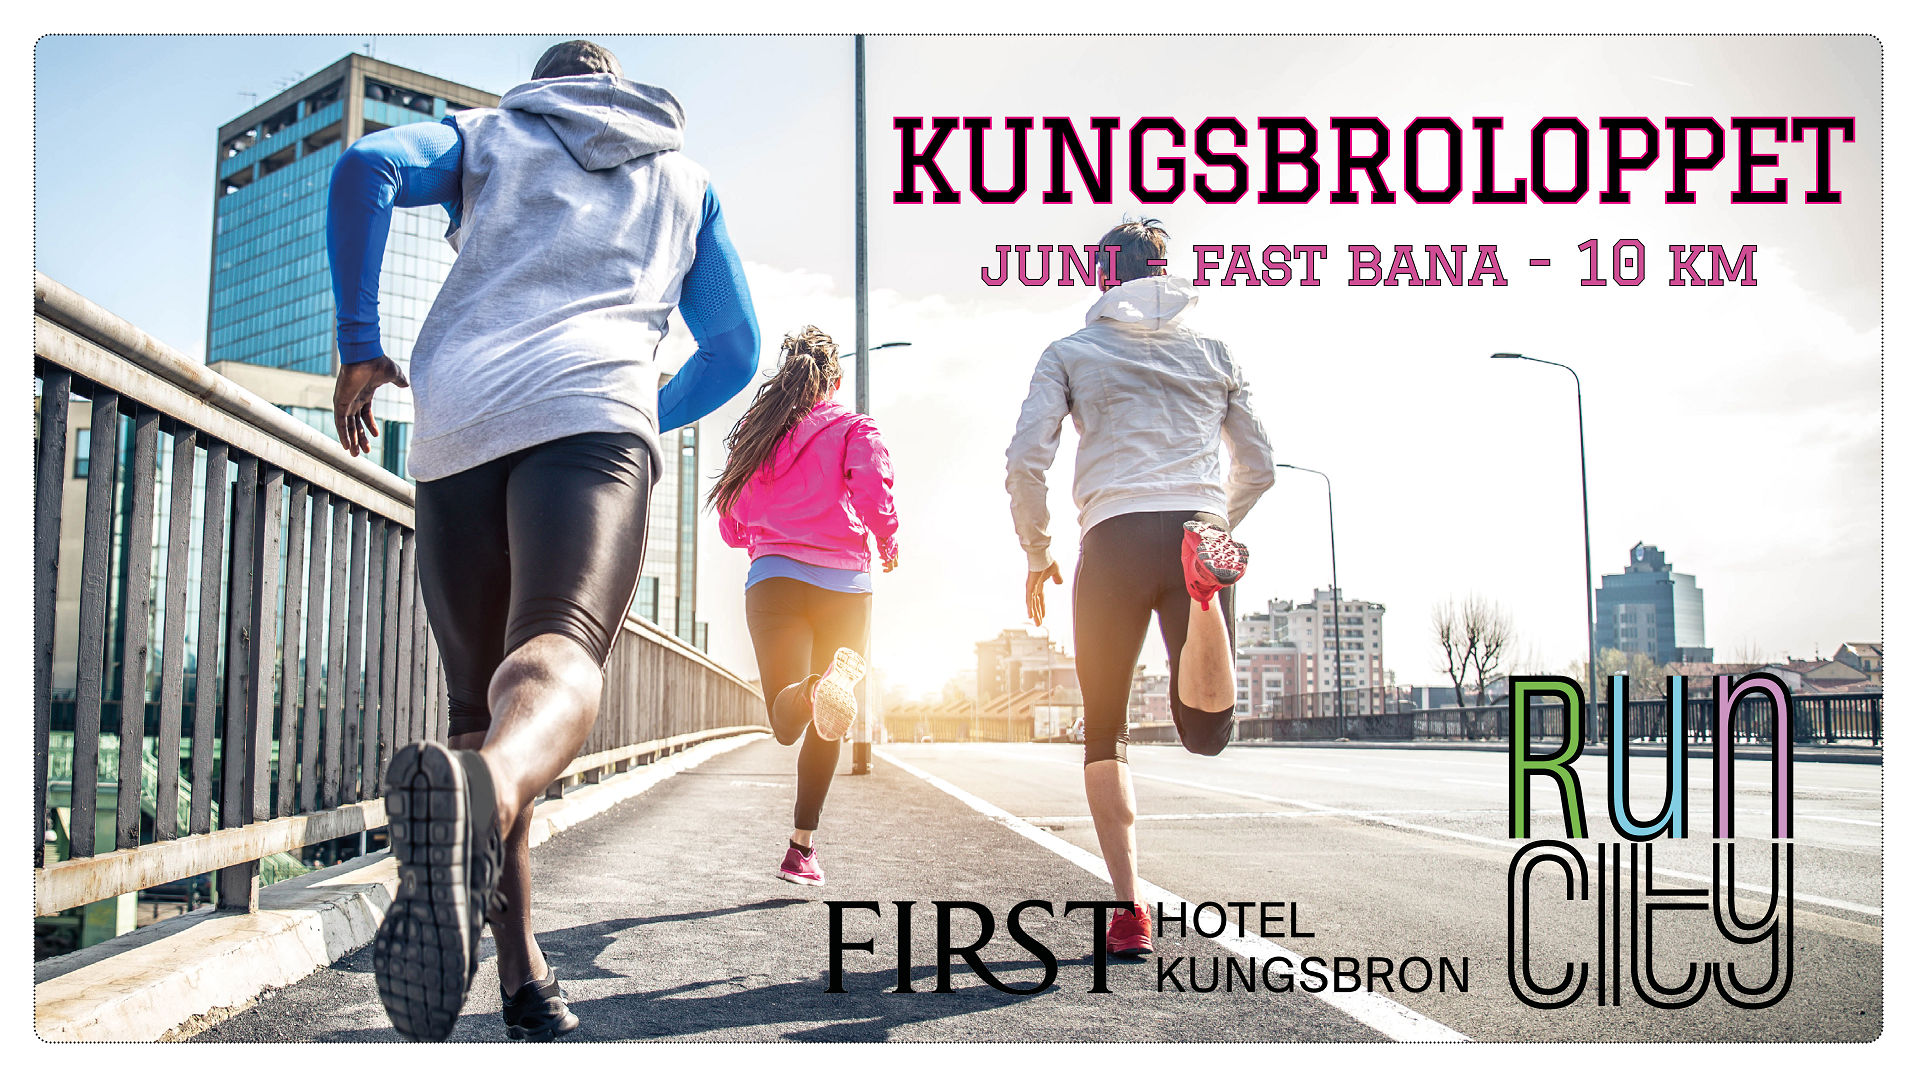 Kungsbroloppet 10 km - fast bana Kungsholmen - JUNI